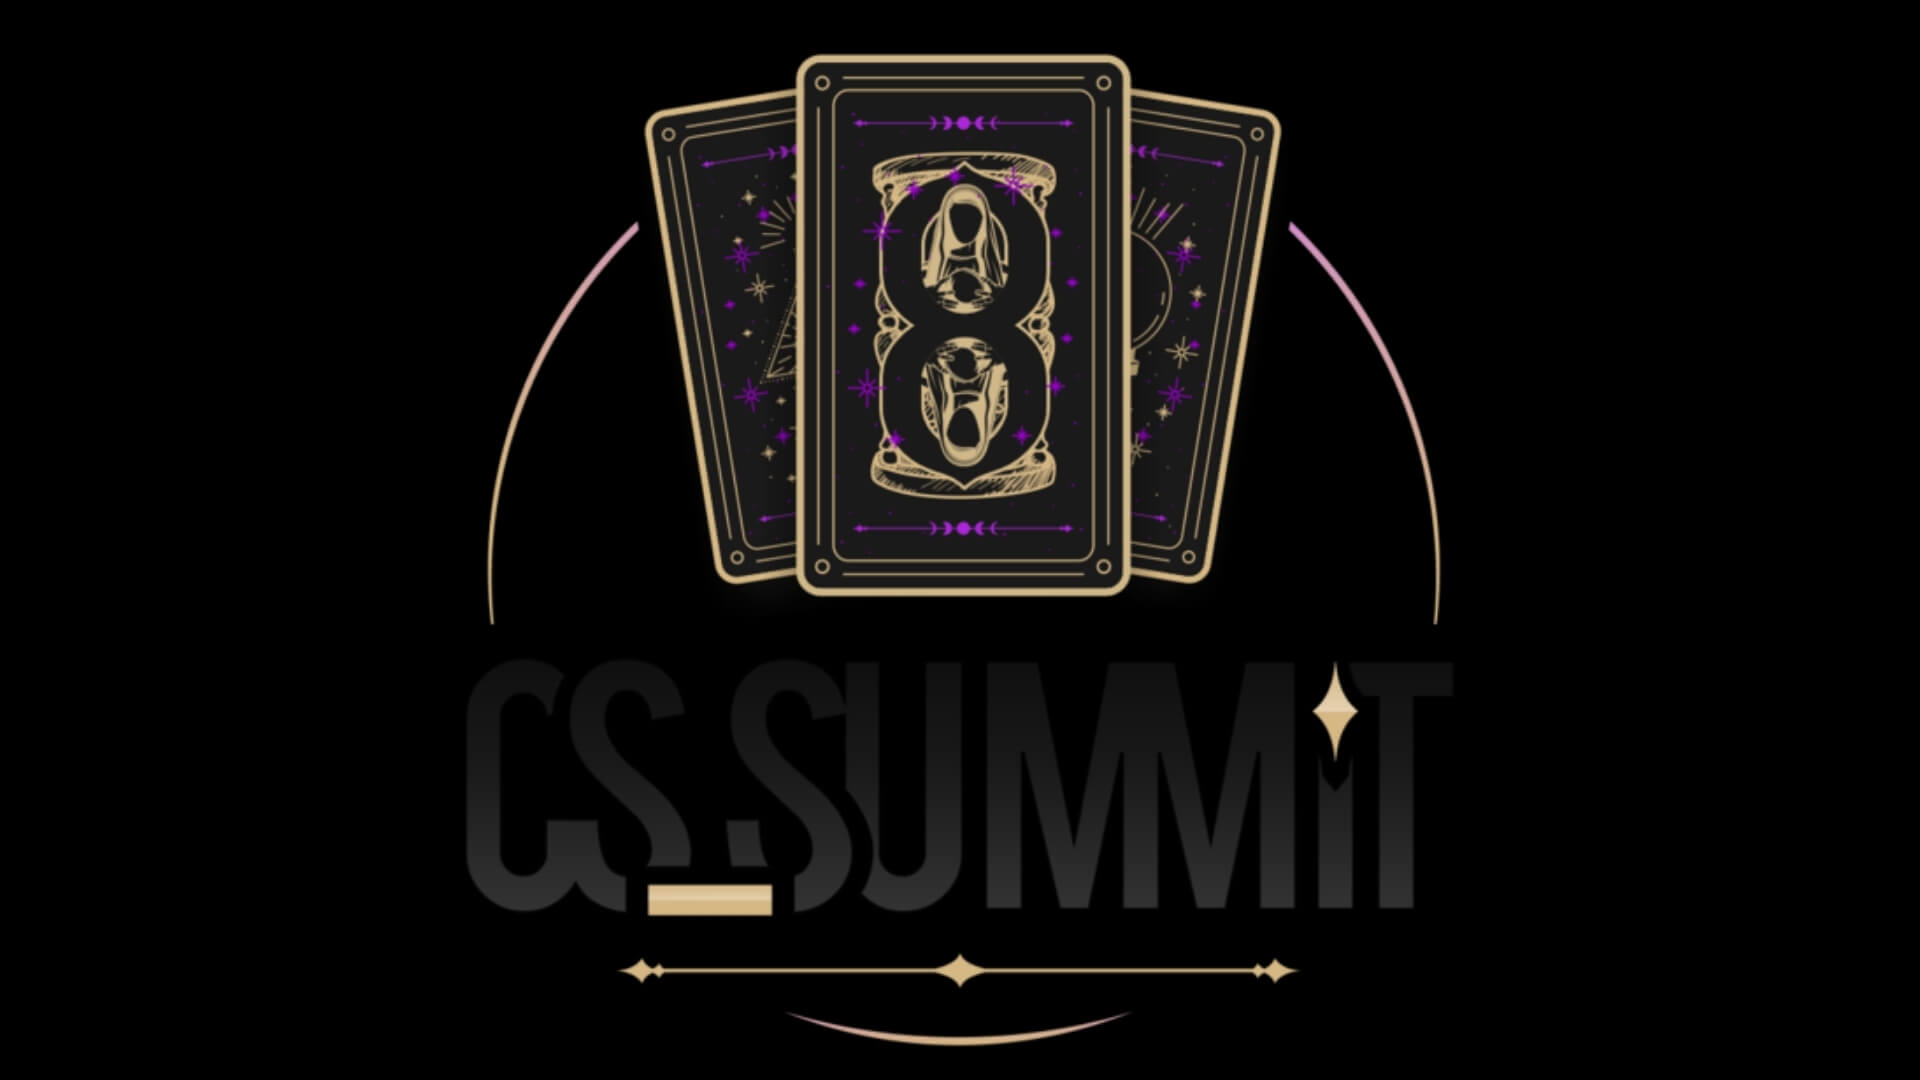 cs-summit-8